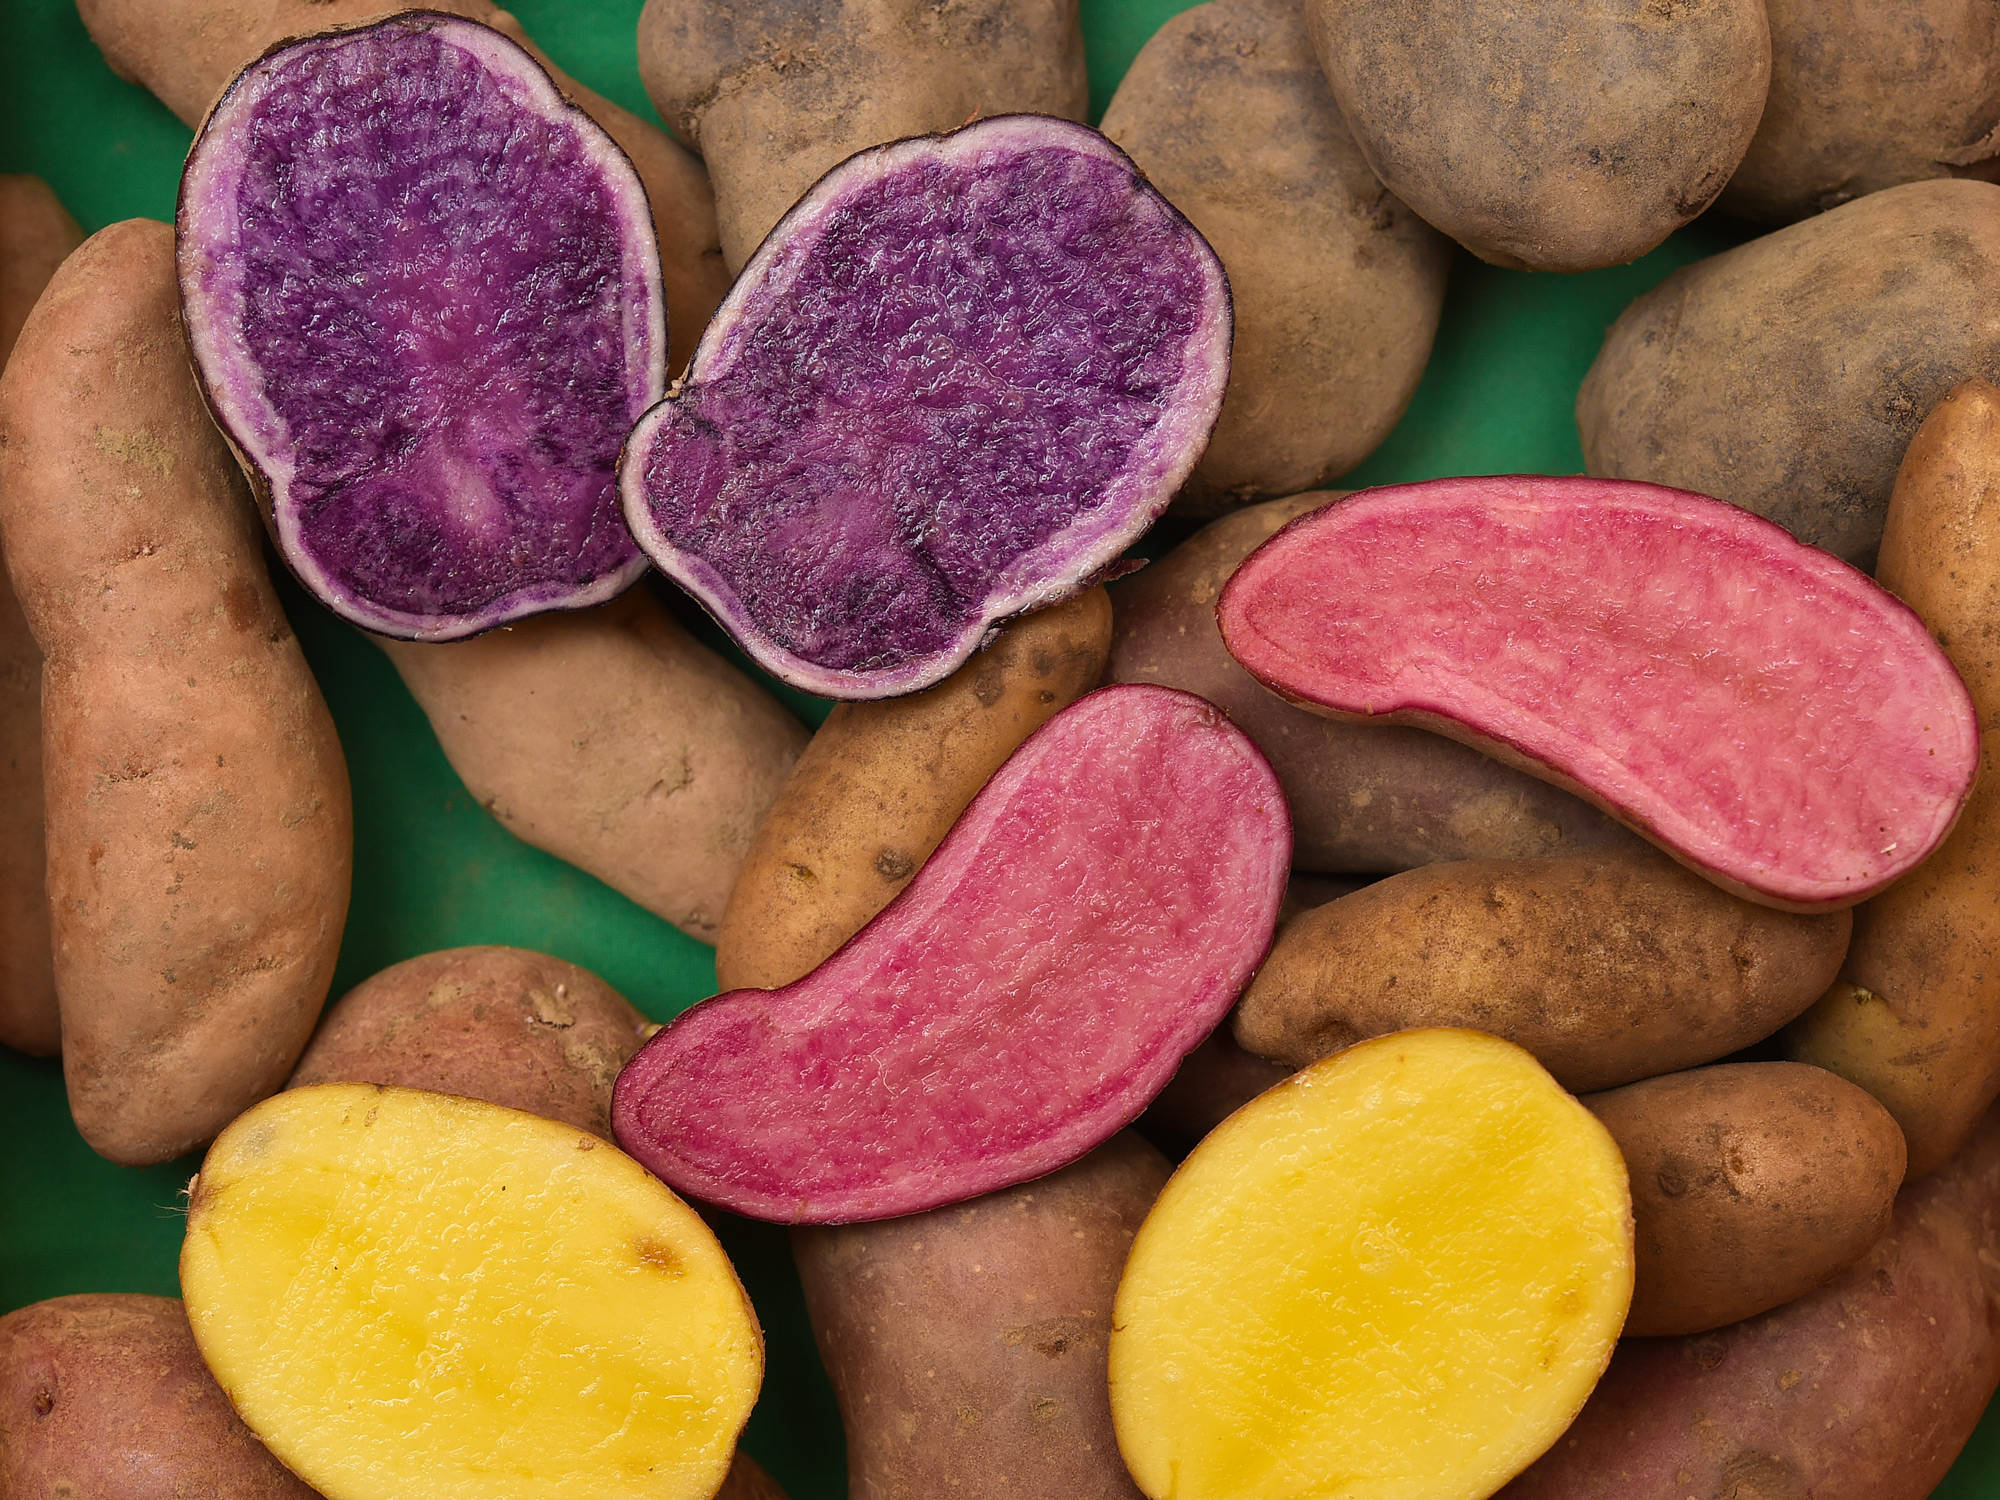 Kartoffel-Sorten - Blaue finden keine Käufer